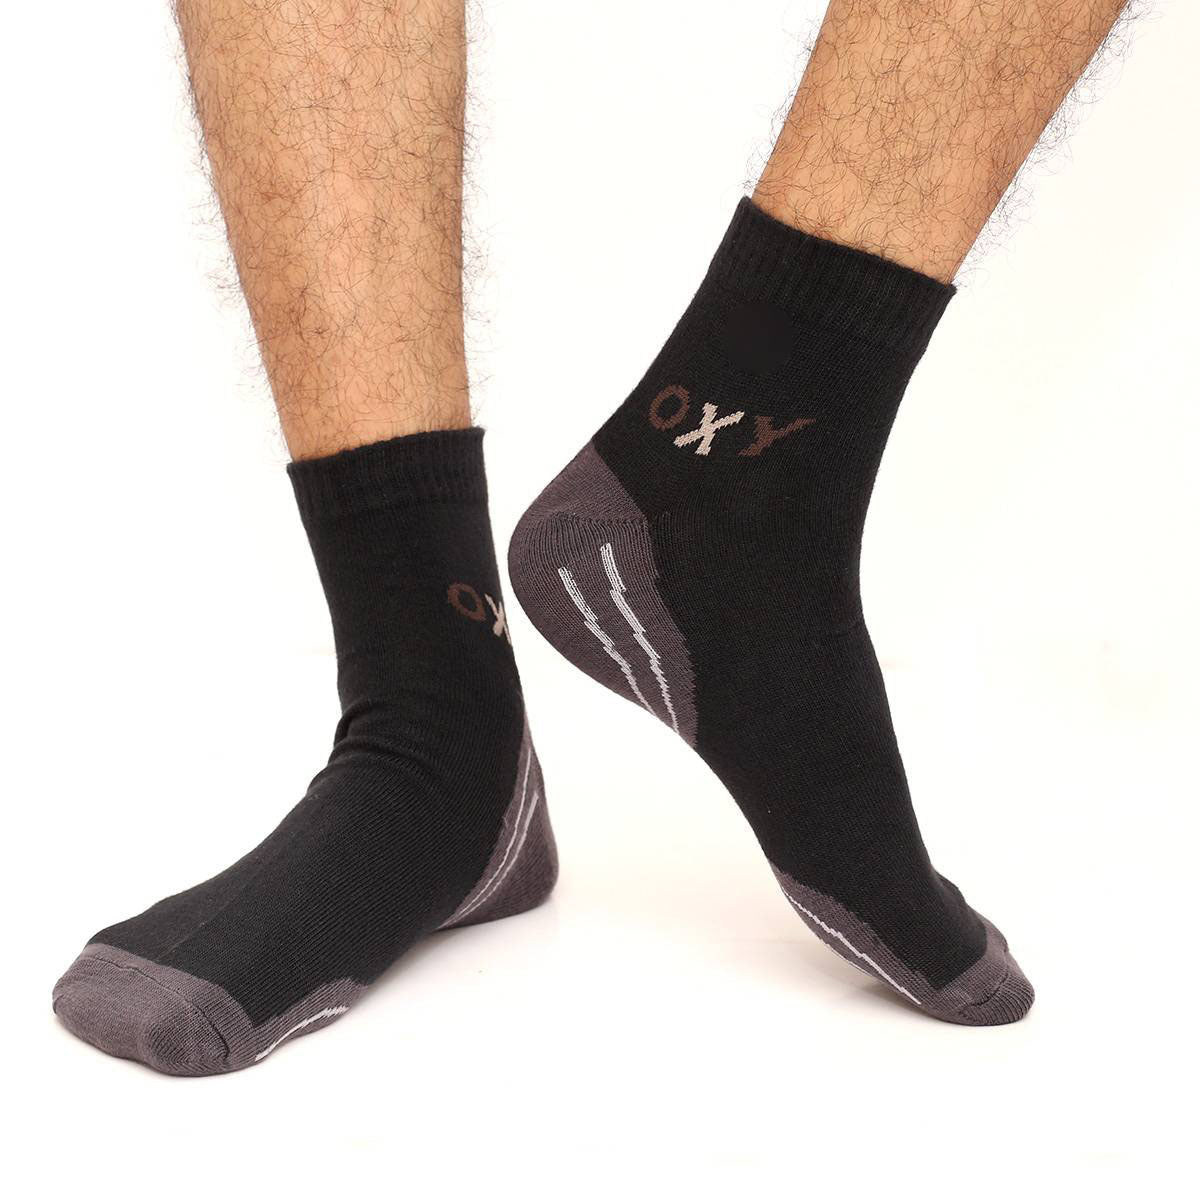 Oxy Ankle Socks for Men by MB Hosiery